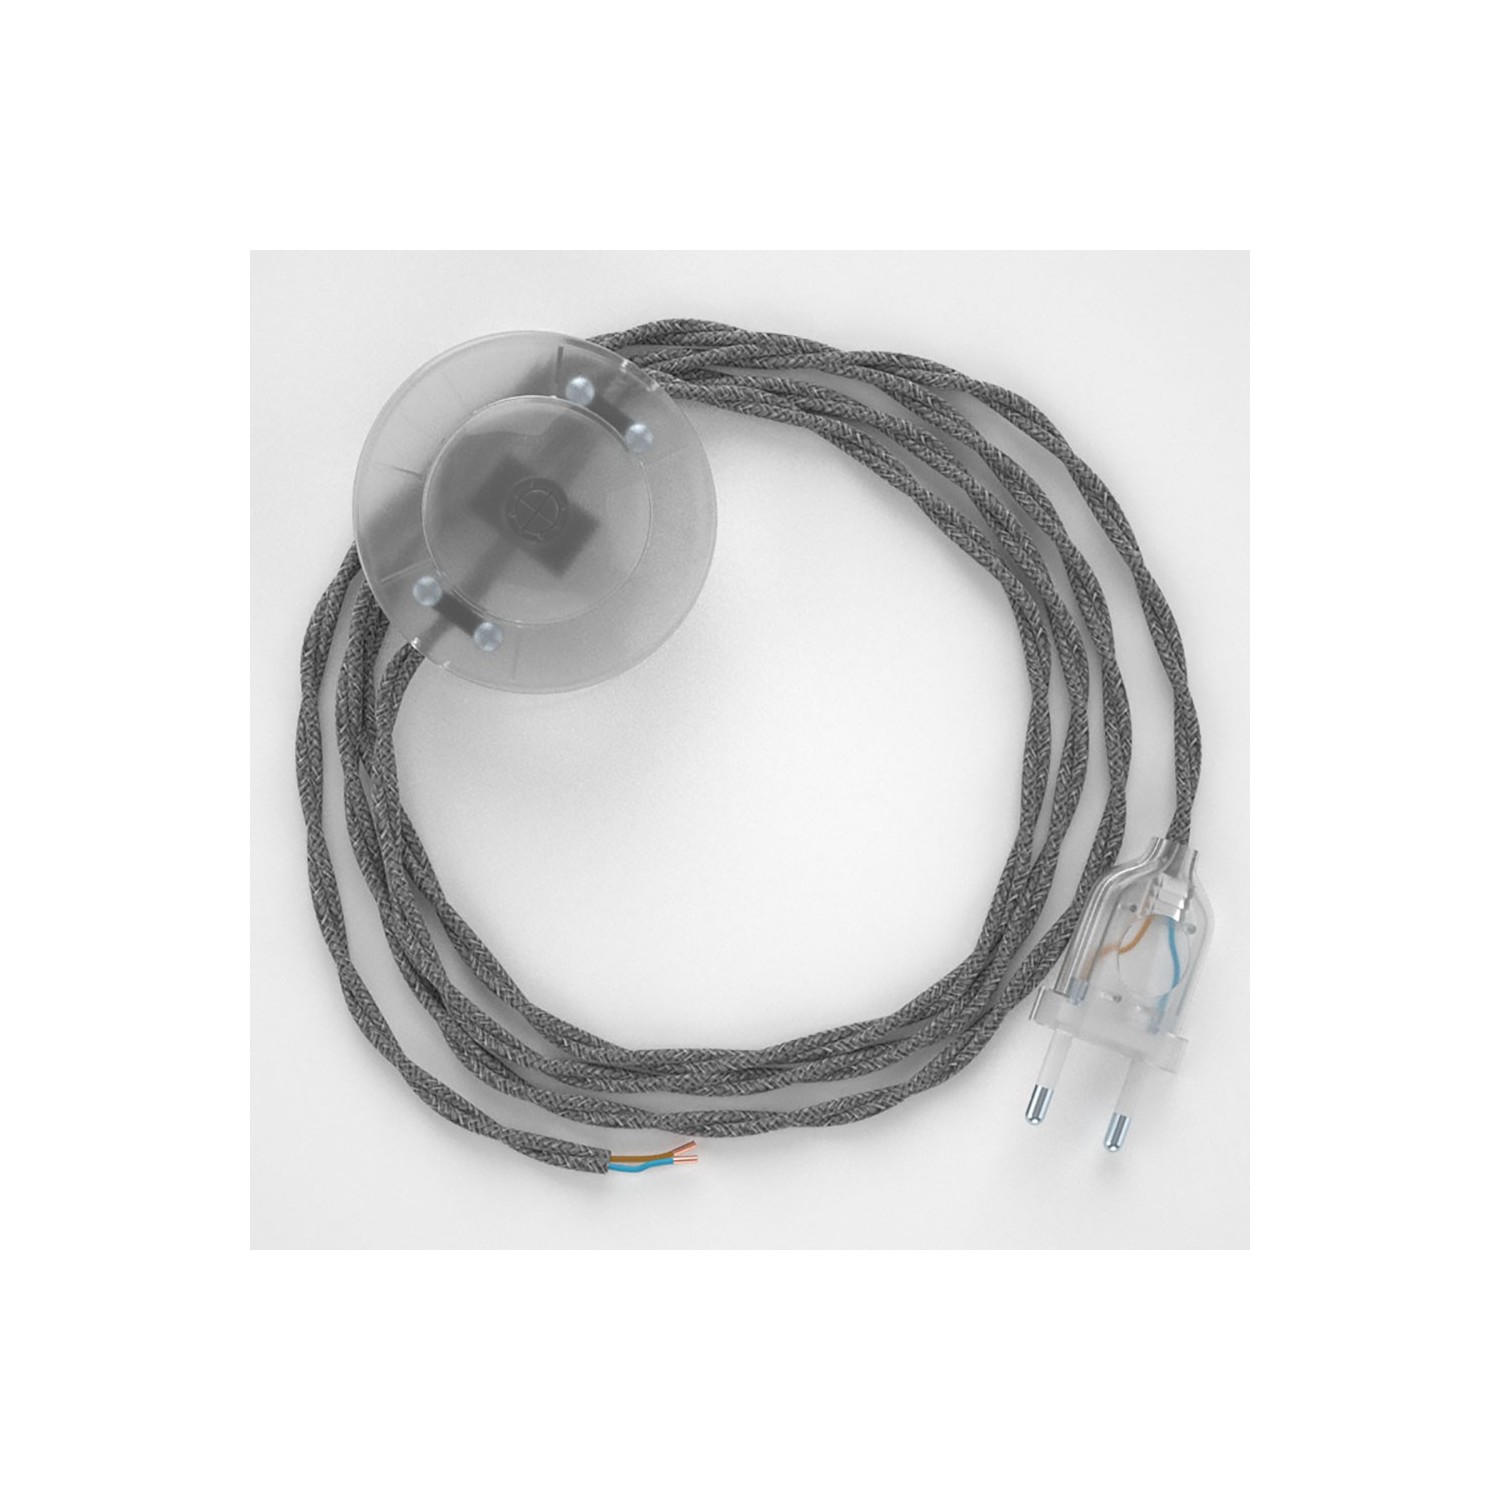 Napájací kábel pre podlahovú lampu, TN02 Šedý ľanový 3 m. Vyberte si farbu zástrčky a vypínača.